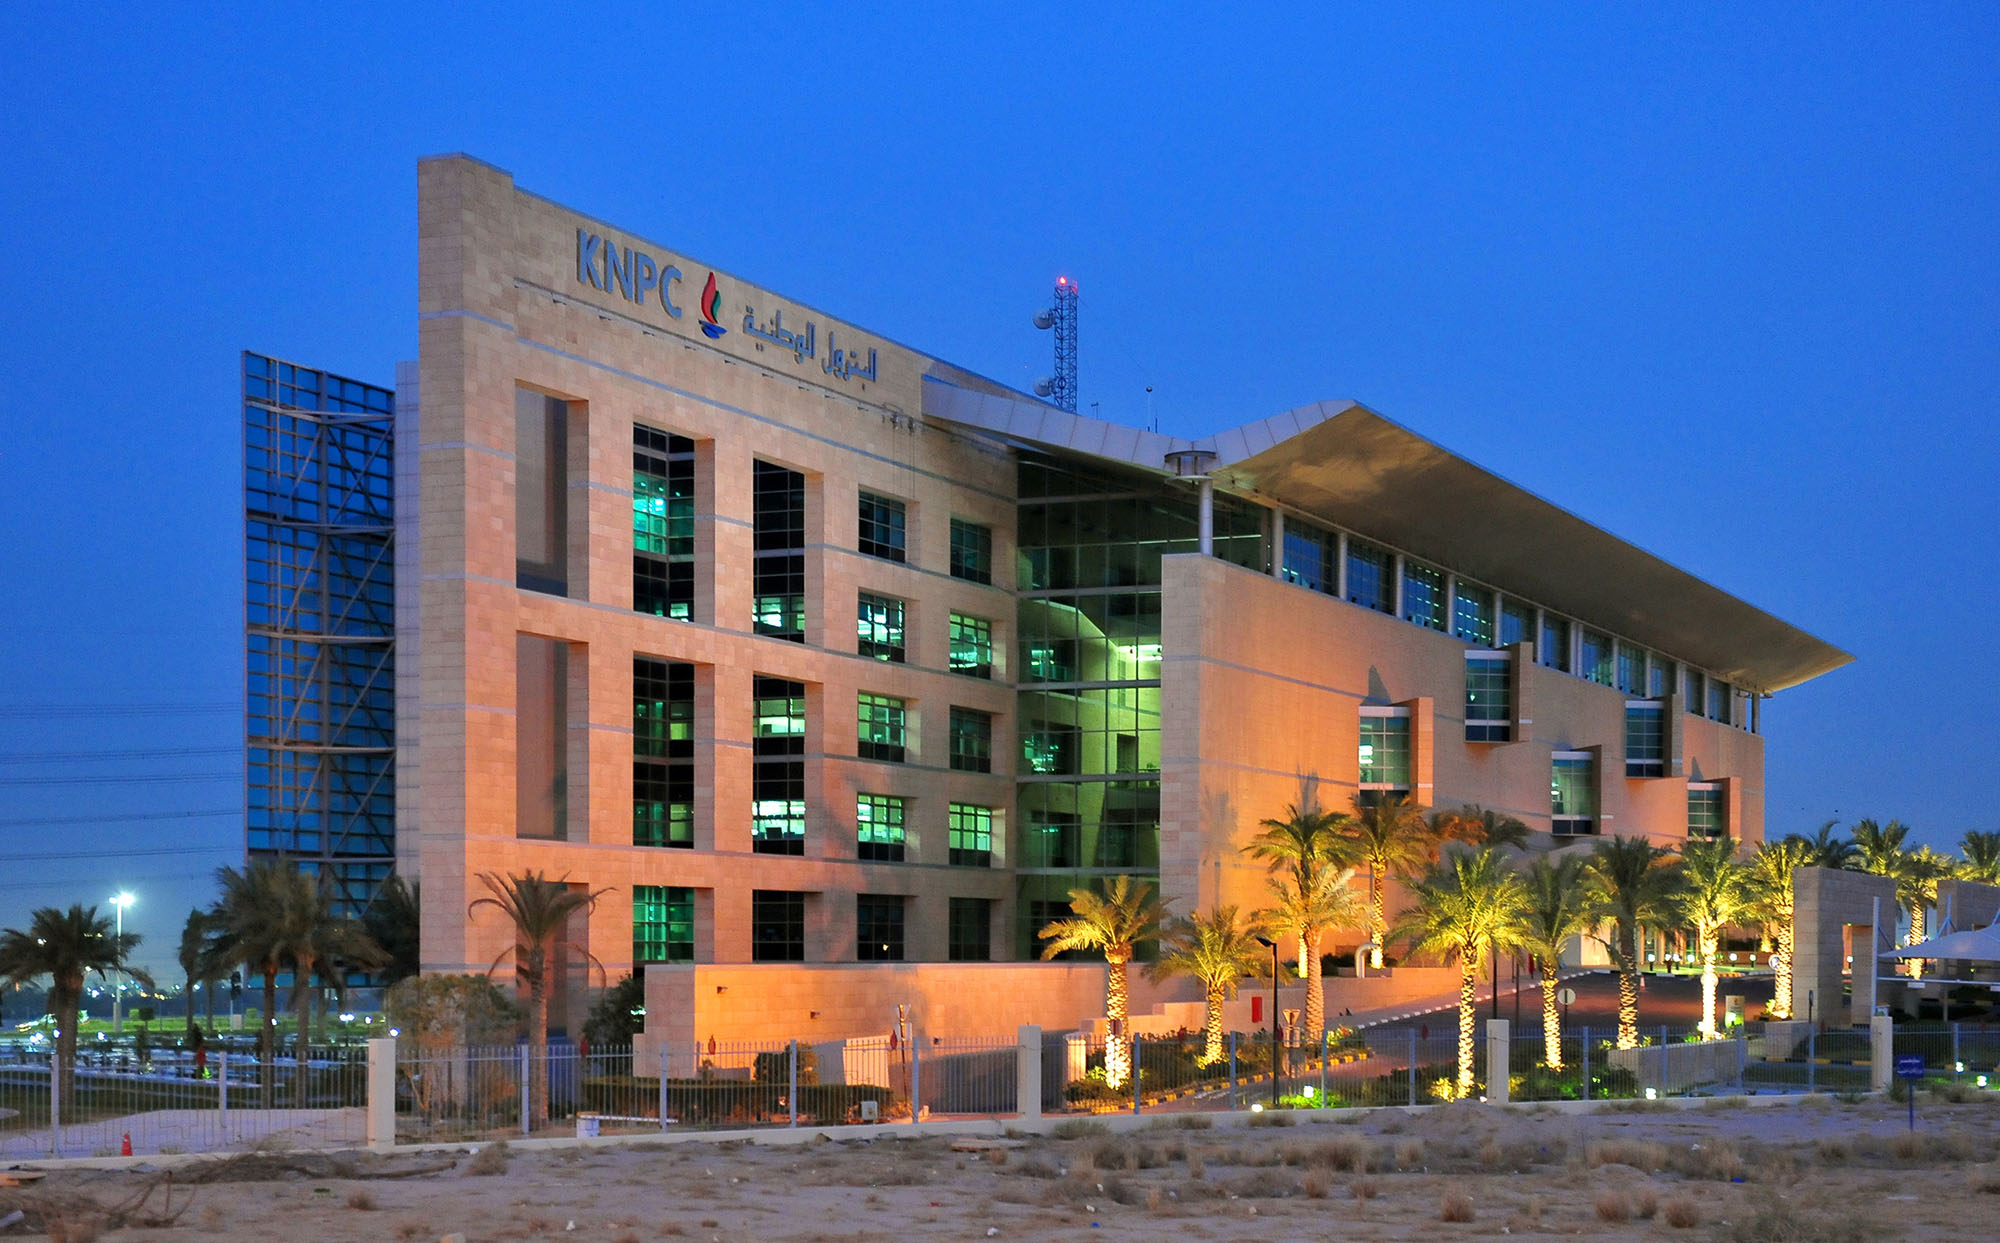 KNPC Headquarters